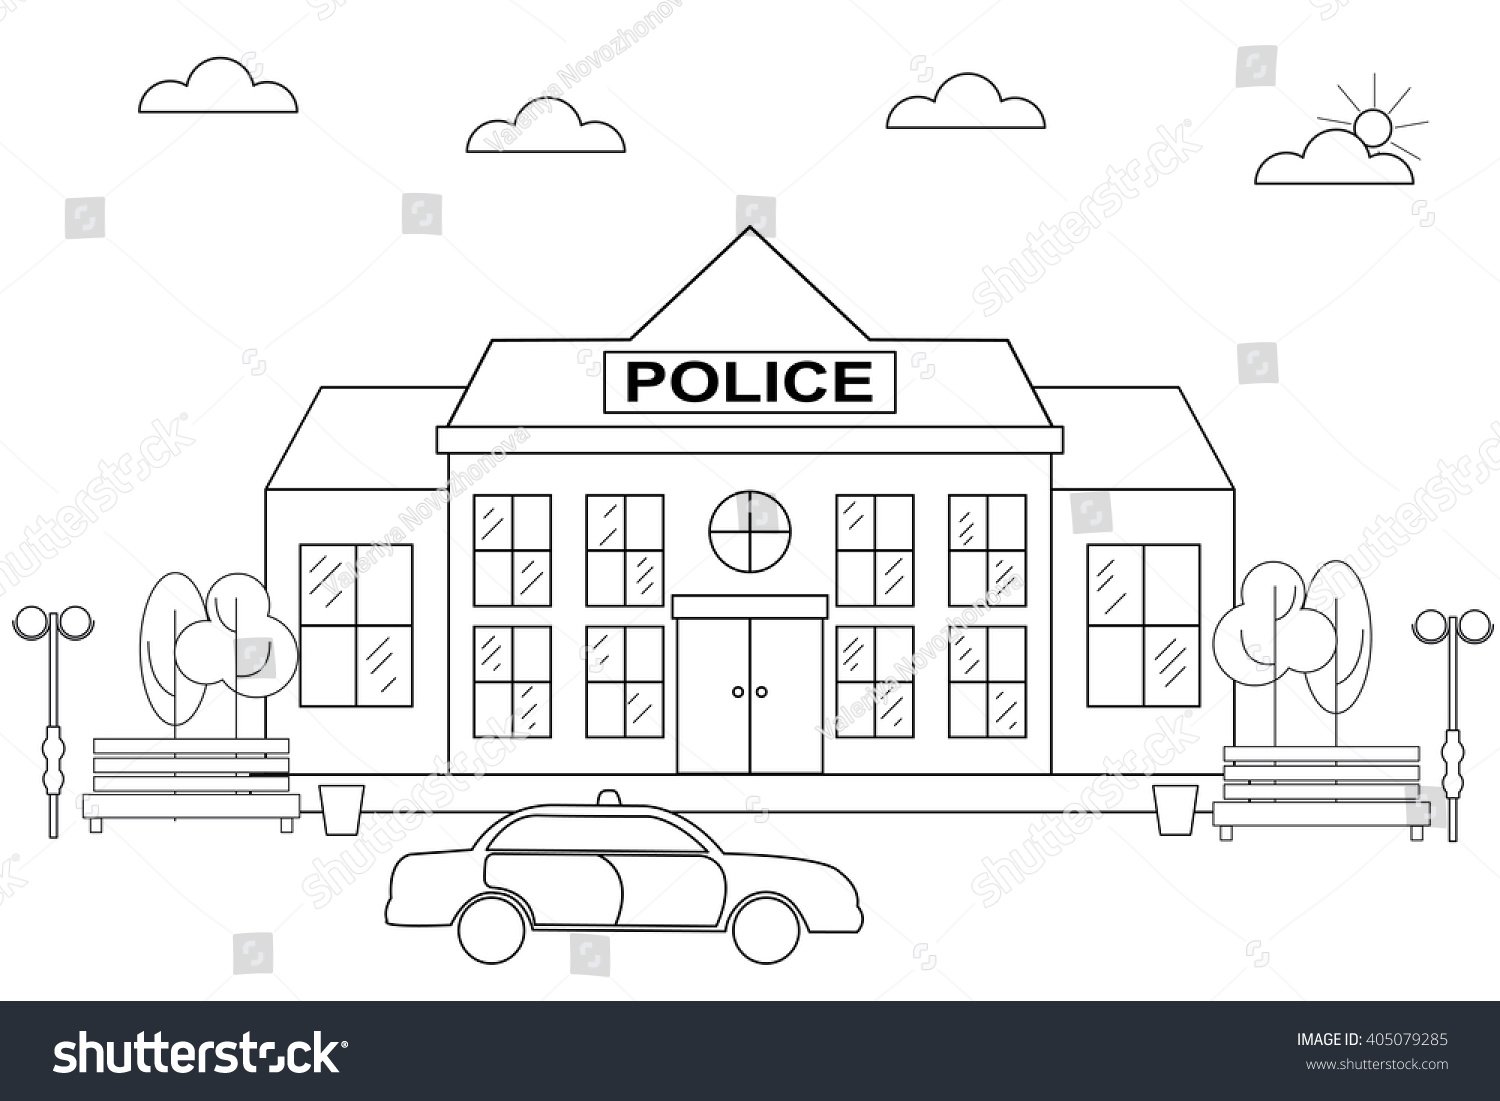 Раскраска полицейский участок